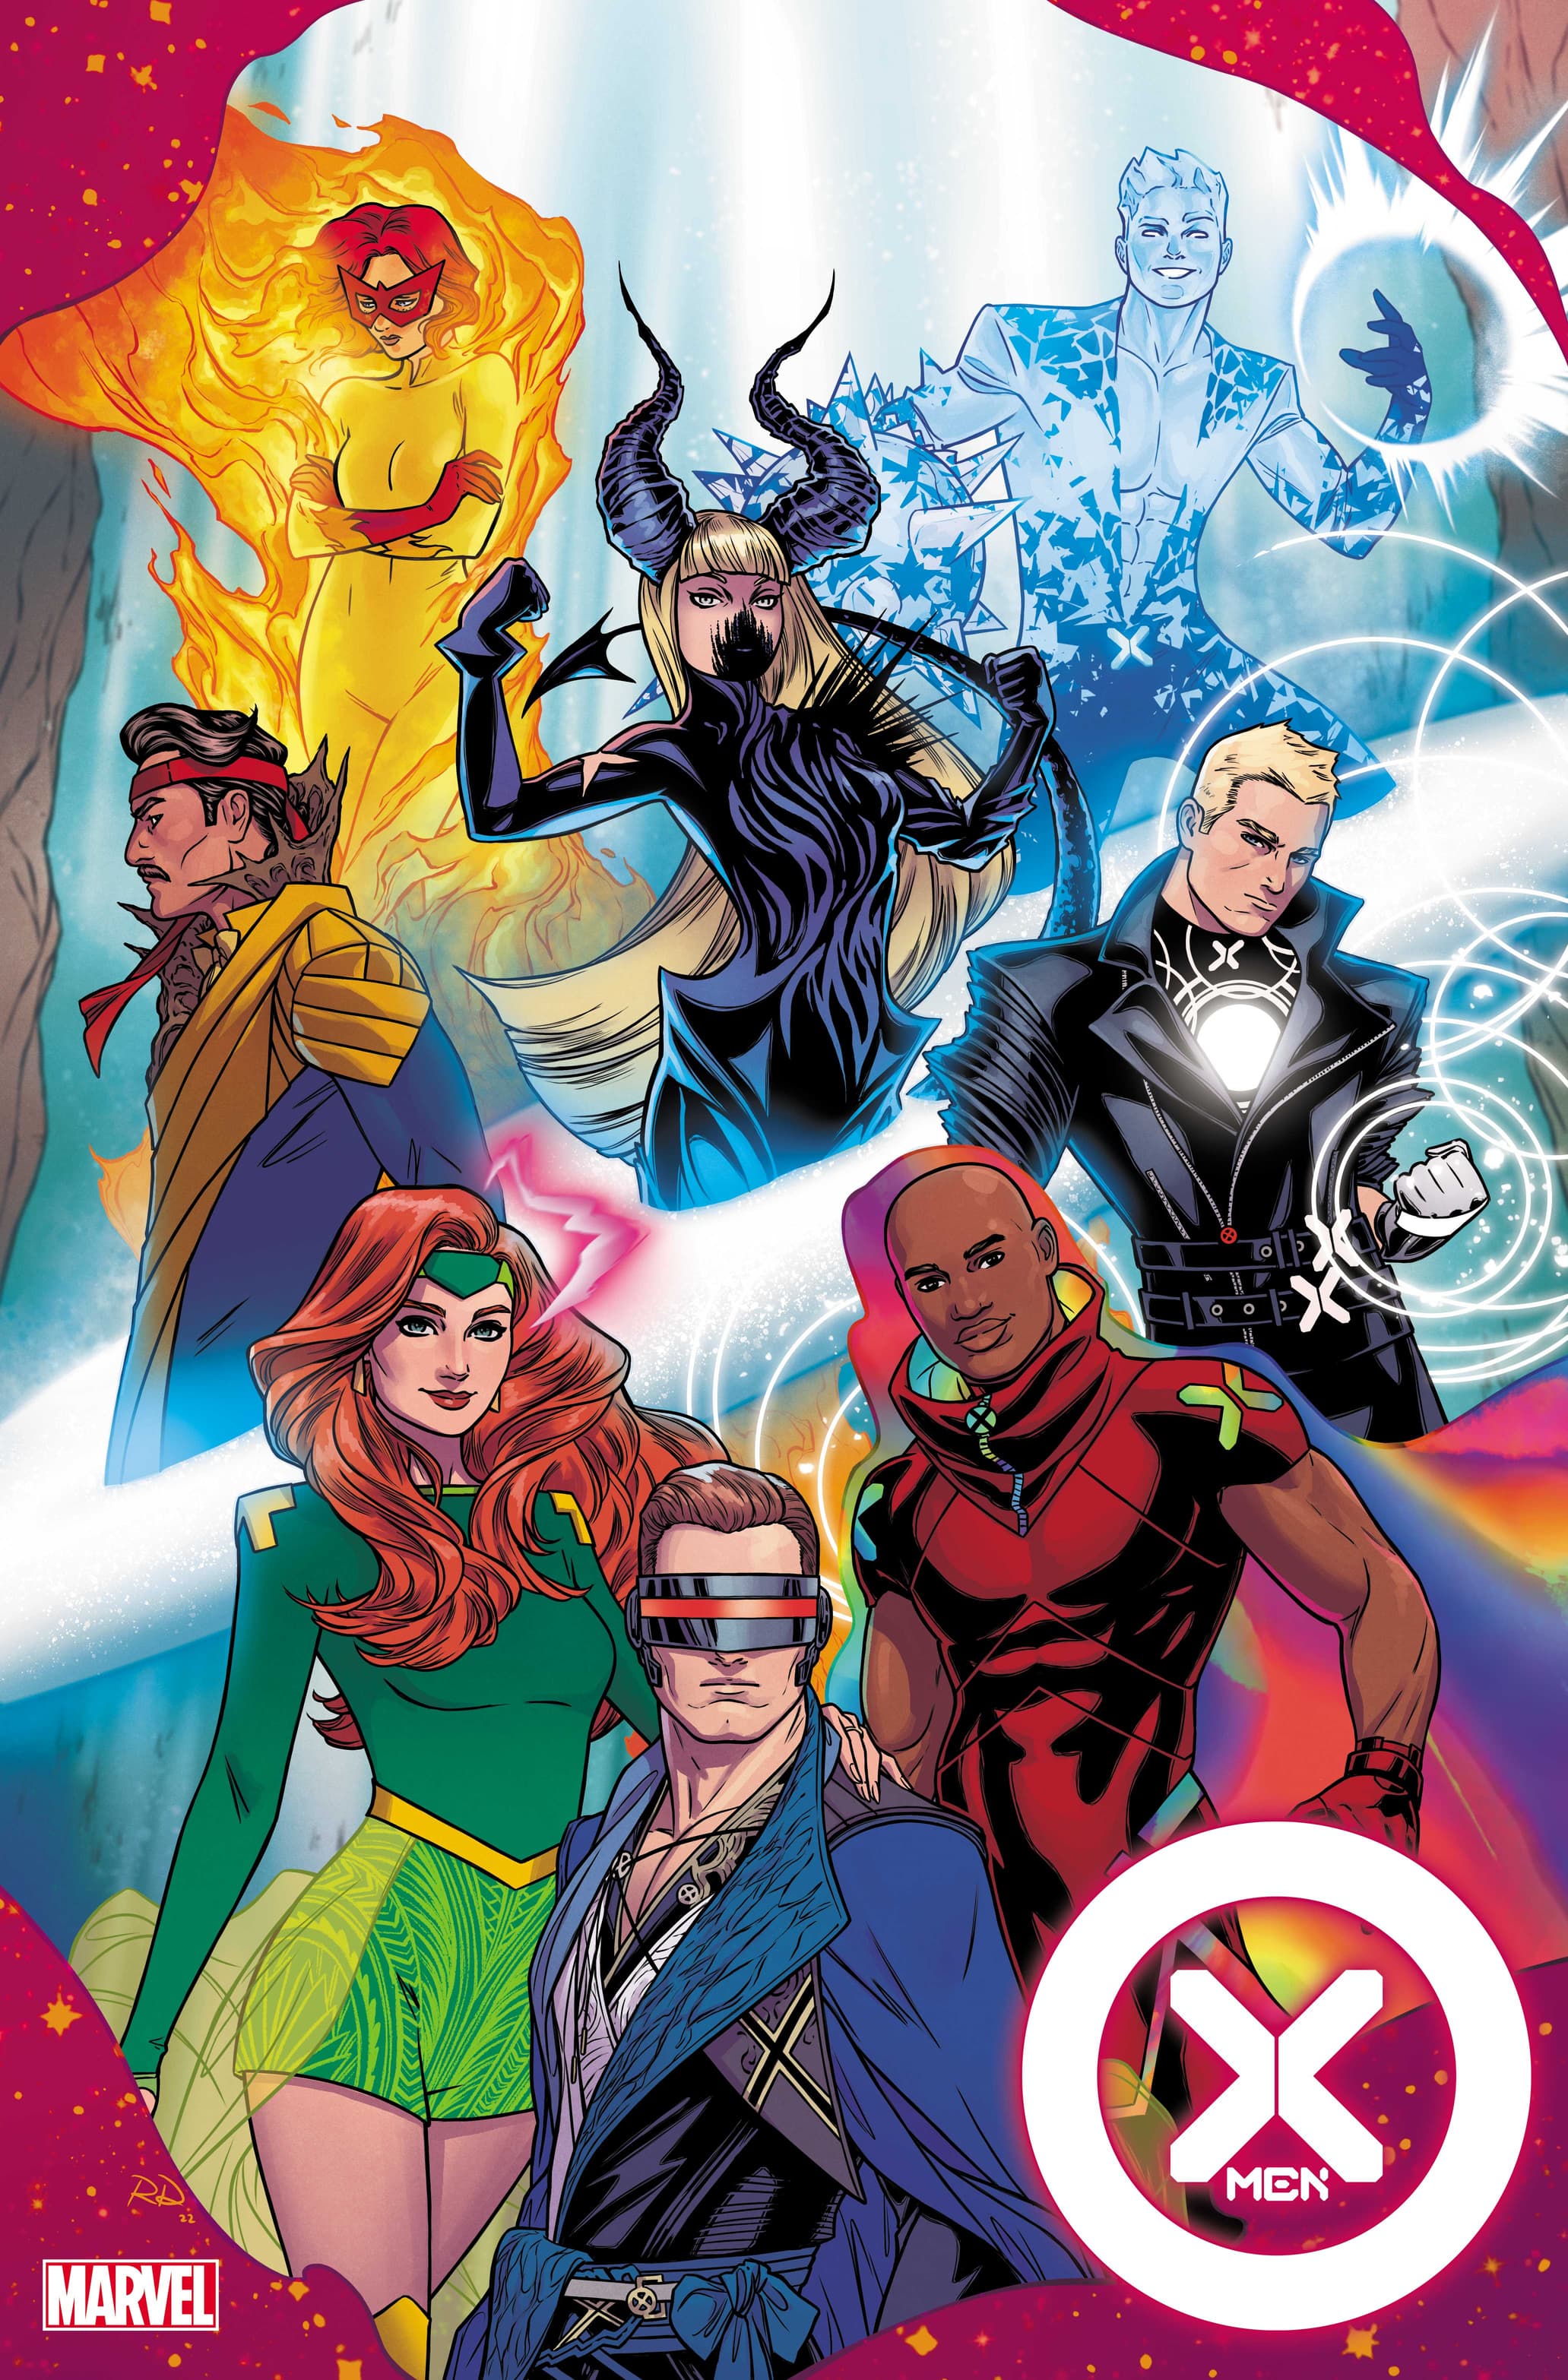 X-Men #13 cover art by MARTIN COCCOLO